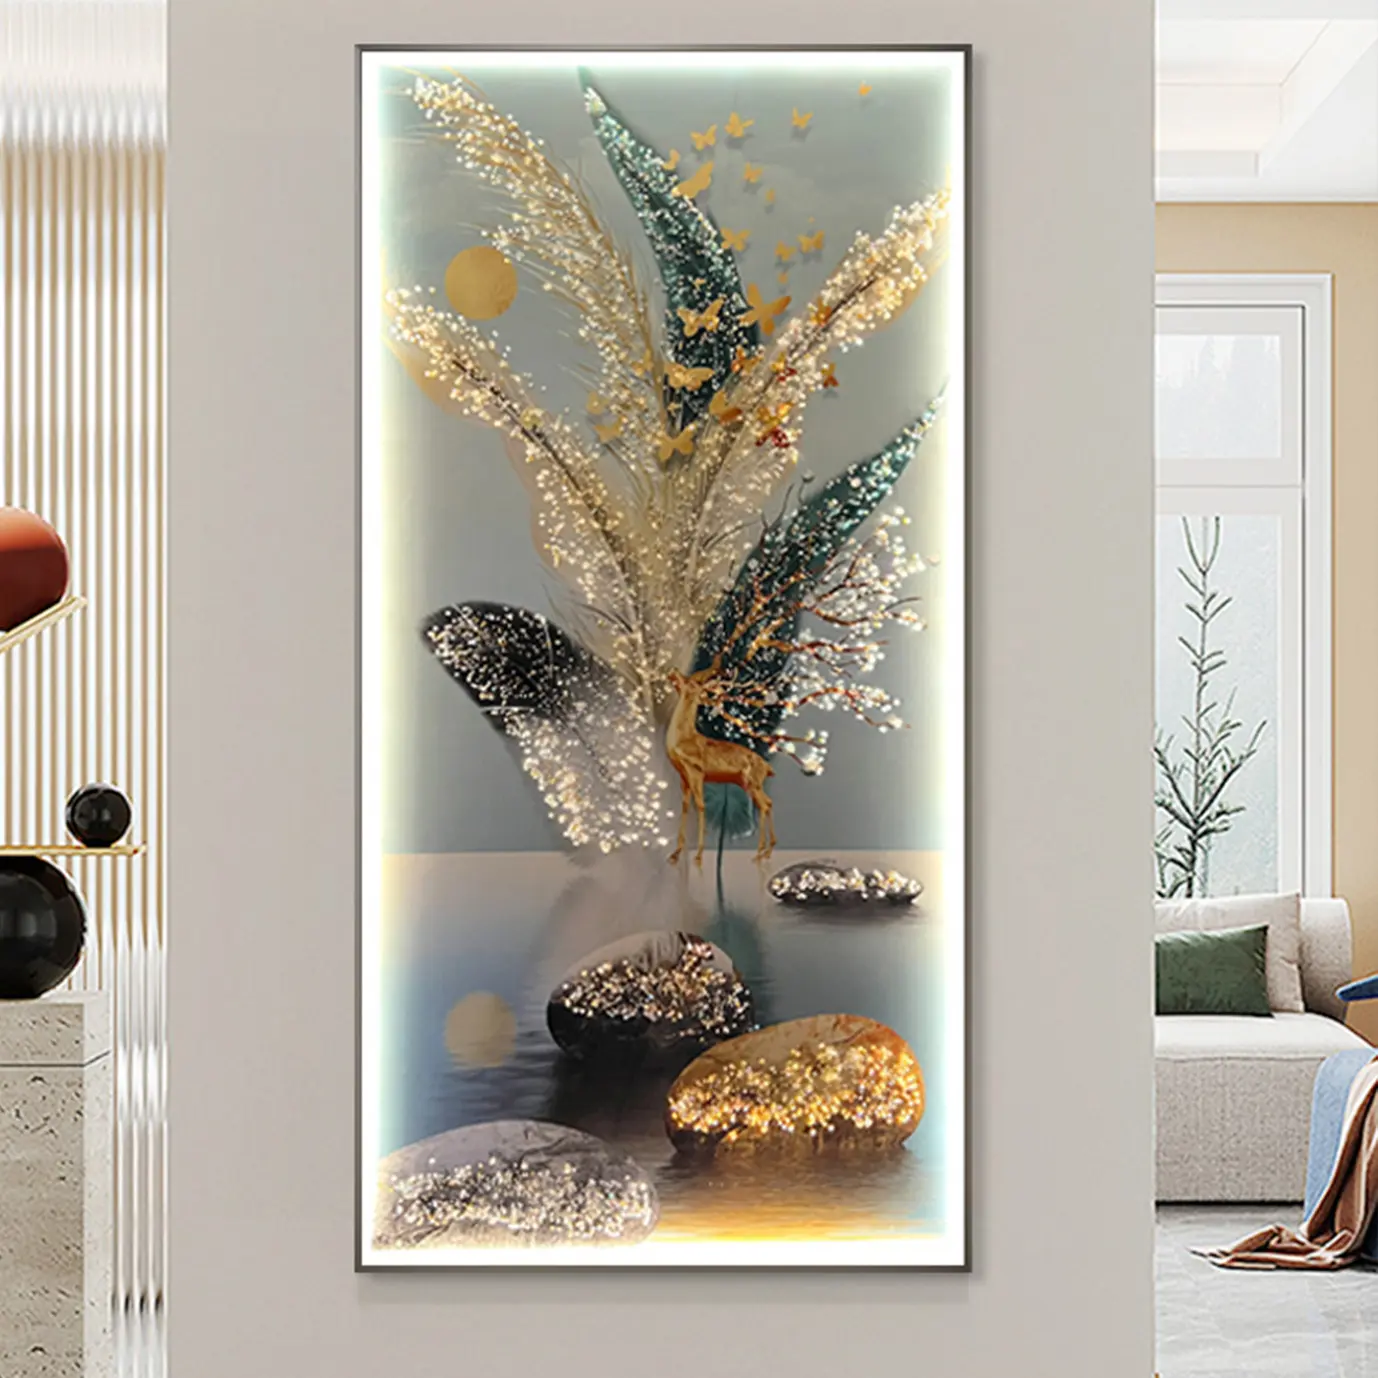 Moderne Luxus Kristall Porzellan Dekoration Malerei Fernbedienung LED Beleuchtung Wand kunst hängendes Bild